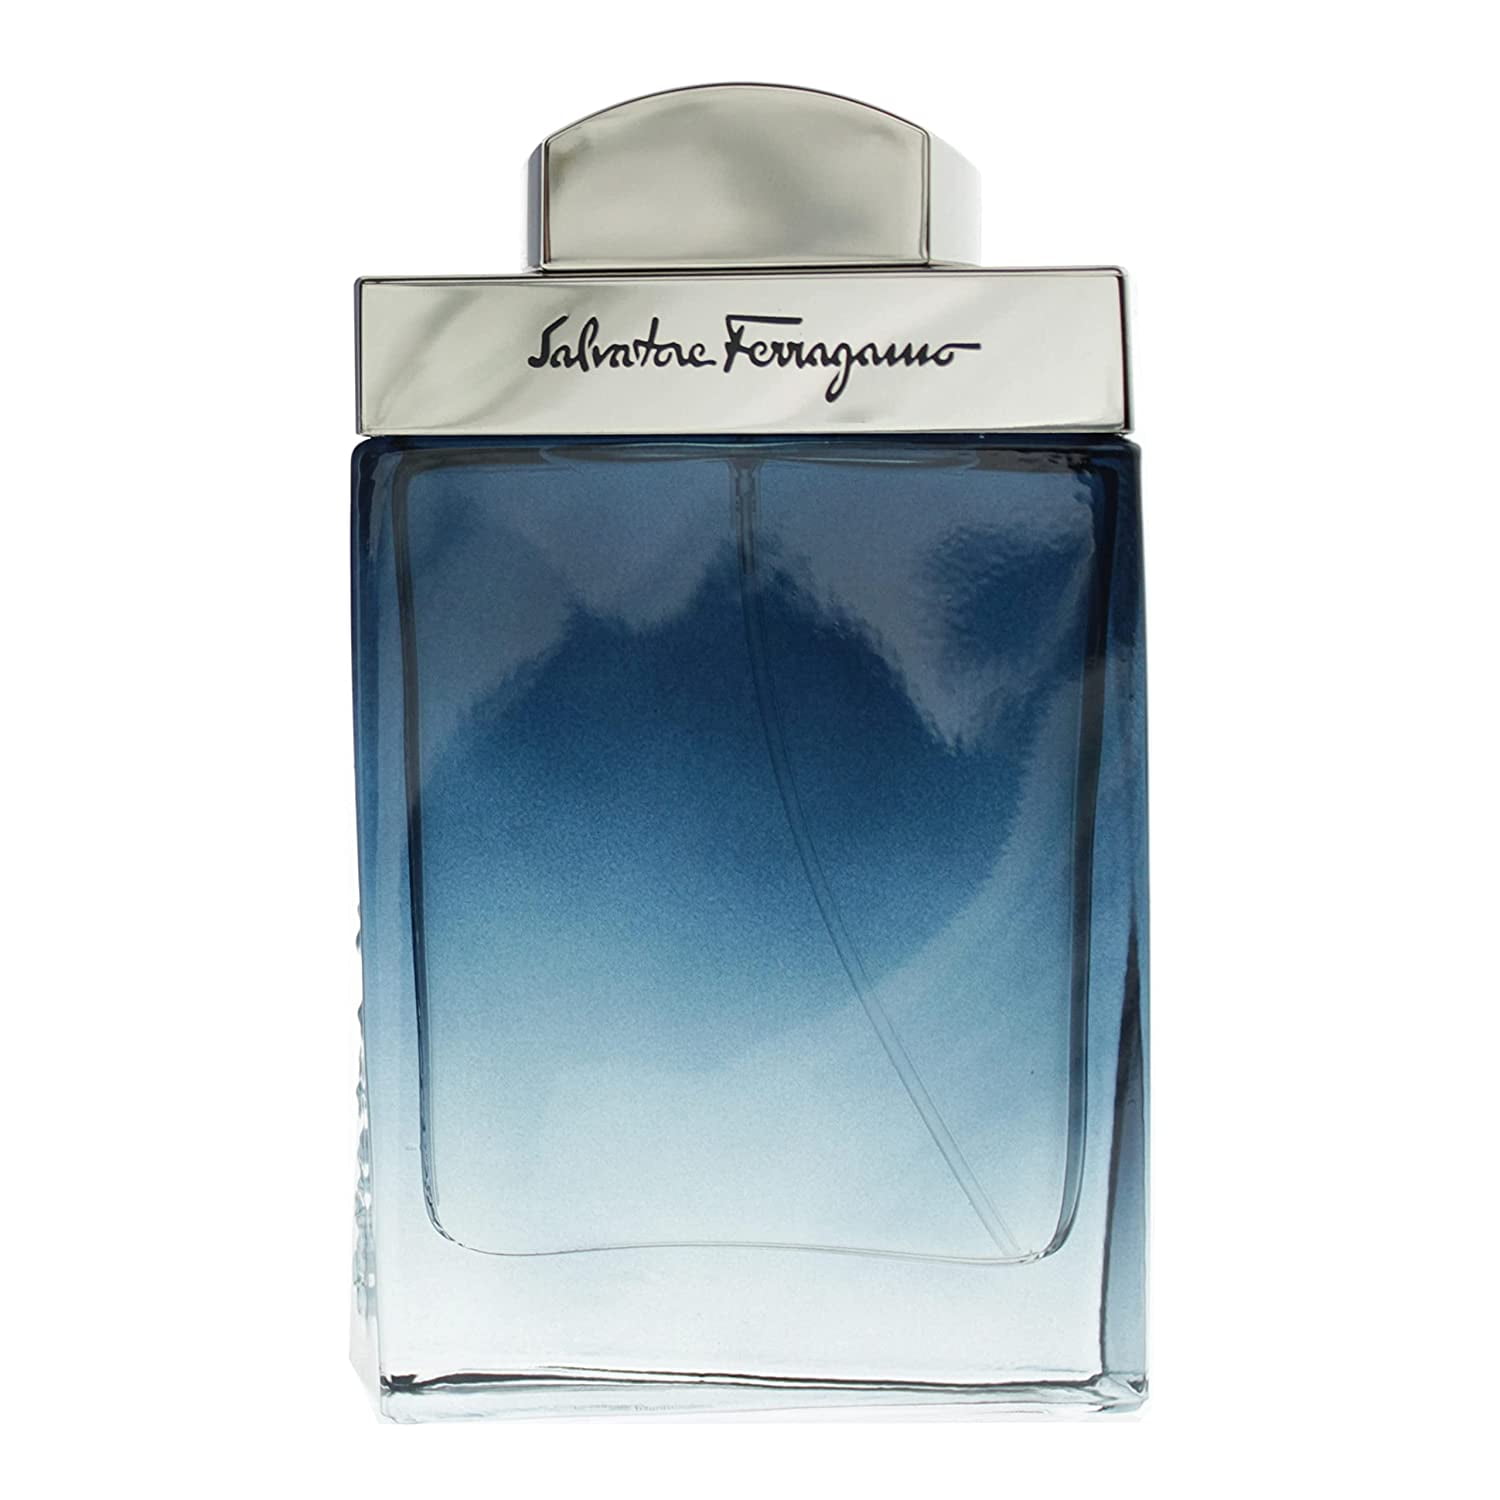 Uomo Salvatore Ferragamo Signature - EDP 3.4 fl. oz., Fragrances, Men's